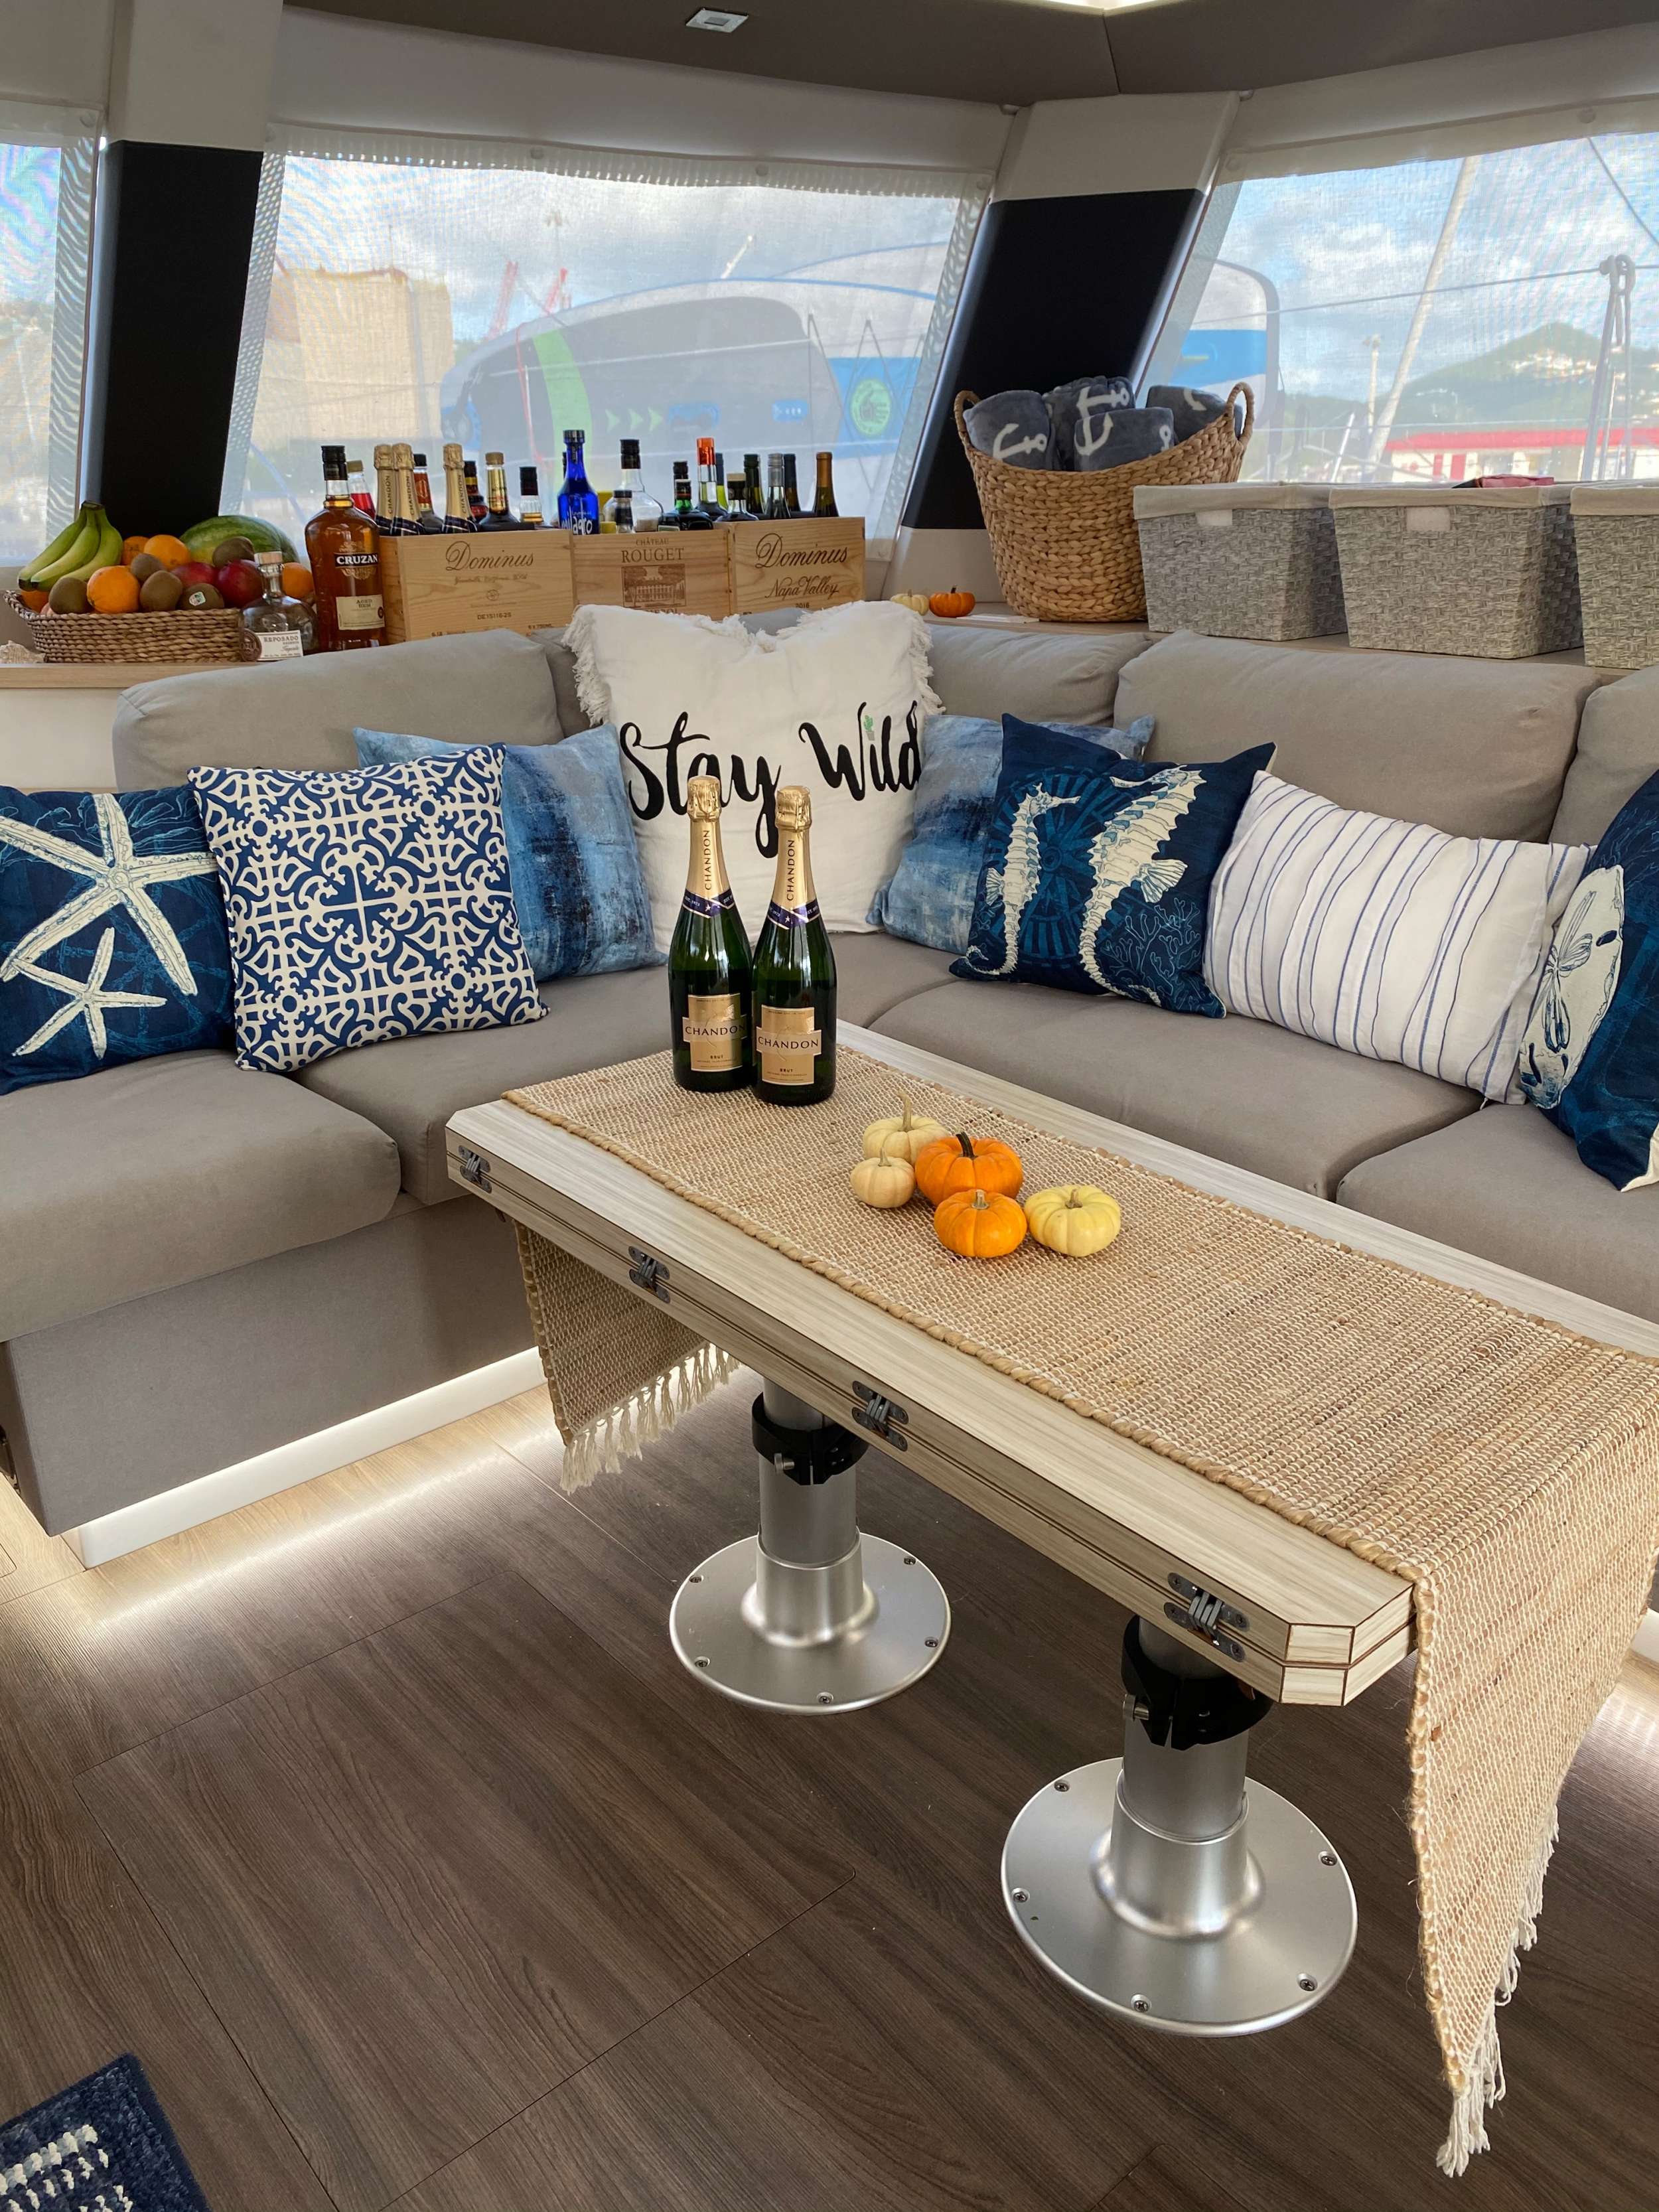 Sol Mates Yacht Charter - Salon